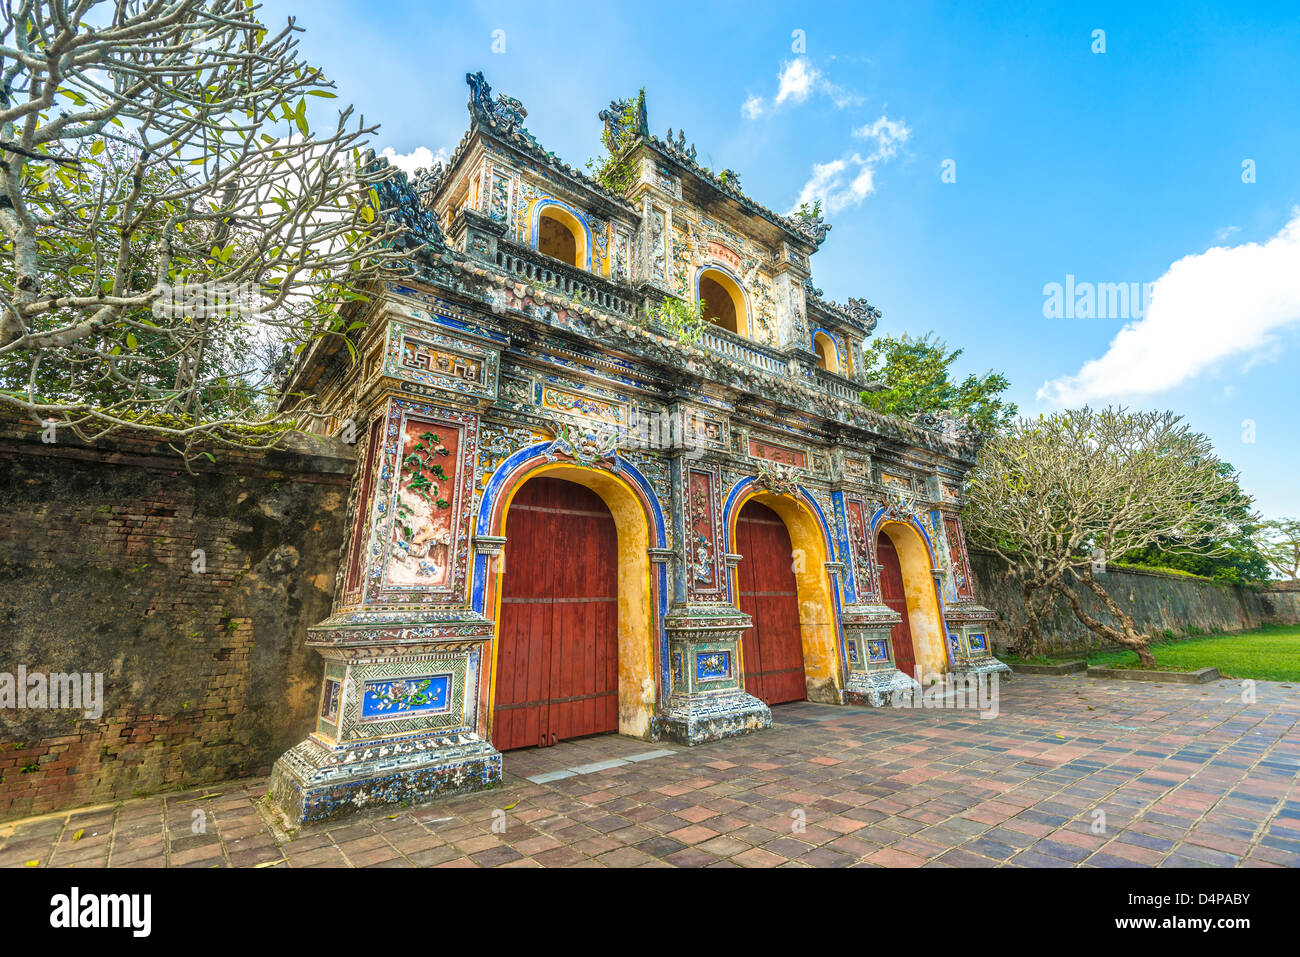 Fassade der das Tor zur Zitadelle in Hue, Vietnam, Asien. Verzierten Eingang zur Kaiserstadt Hue. Hellen Tag mit blauem Himmel und grünen Rasen. TR Stockfoto